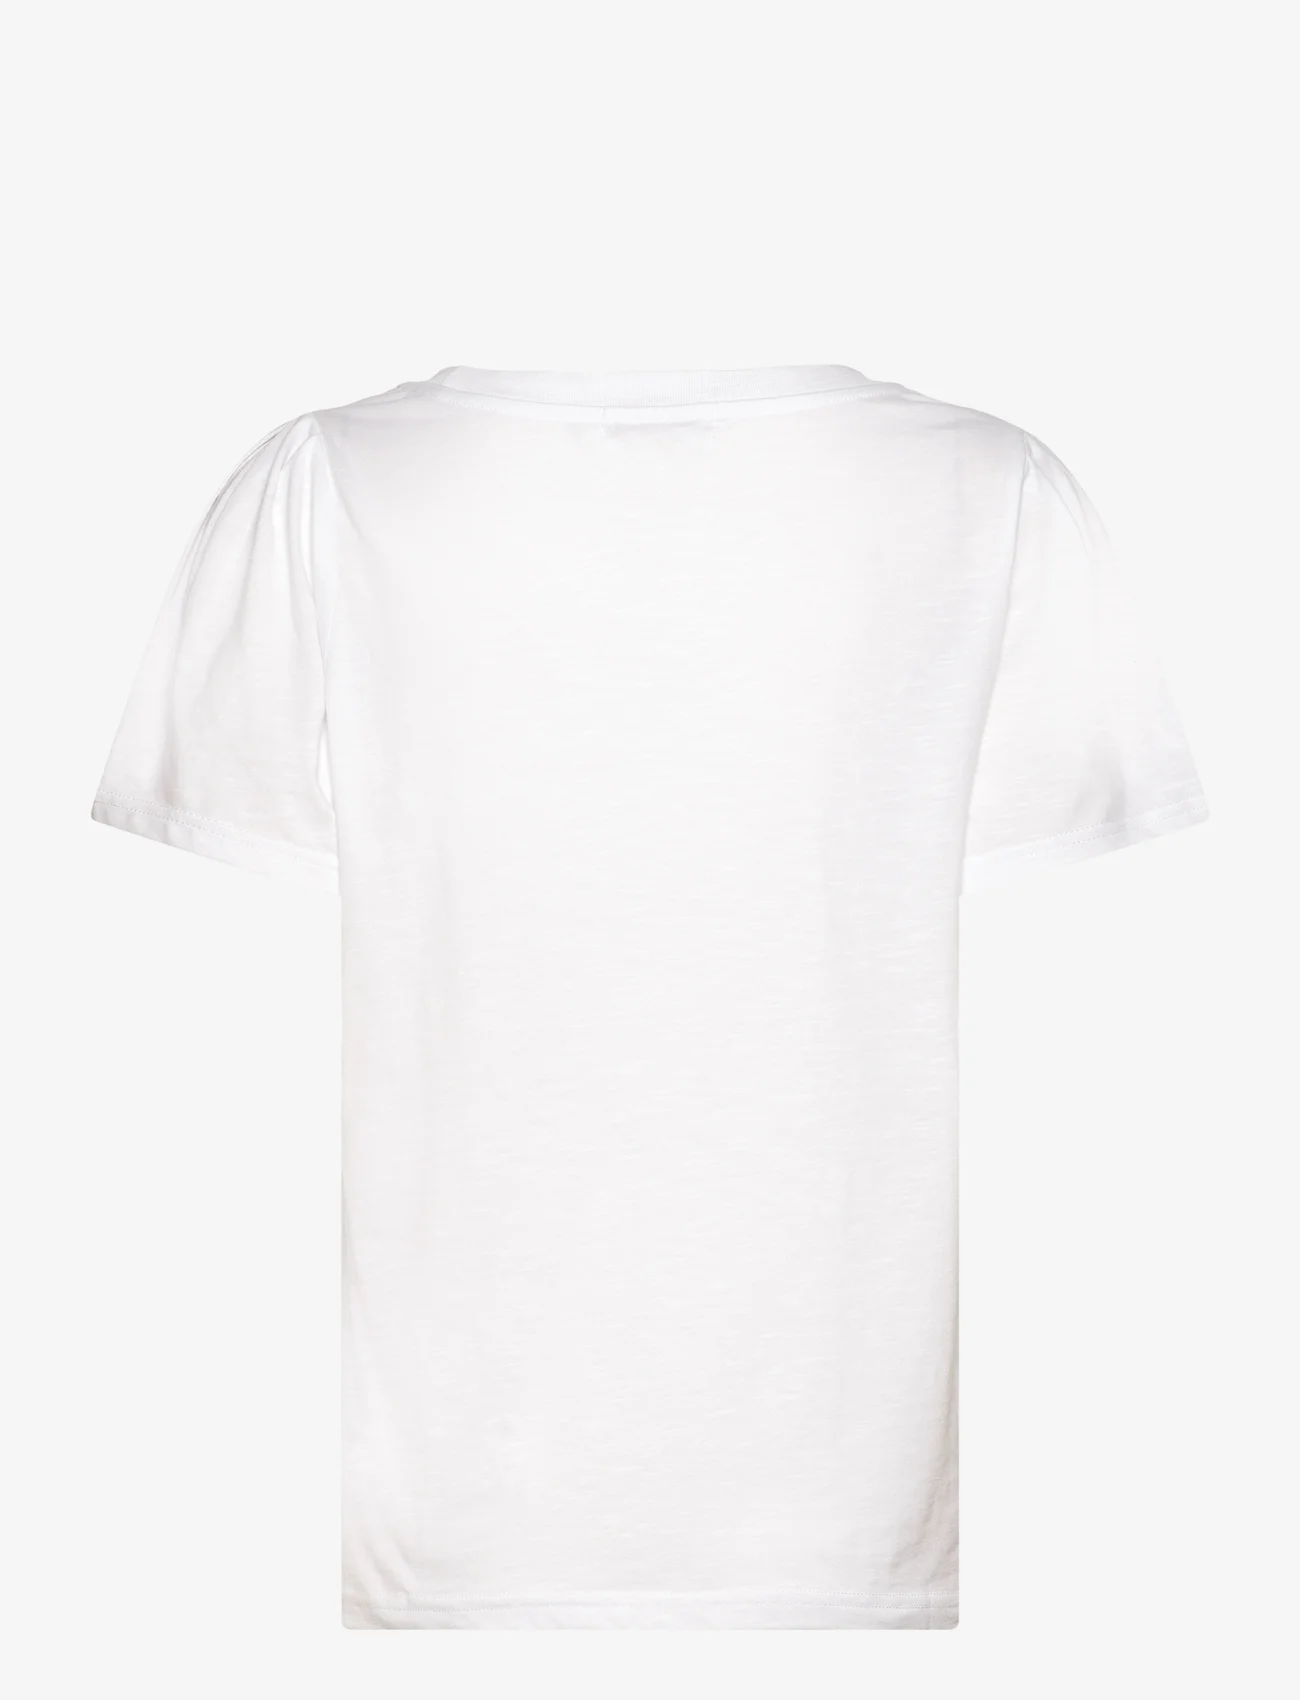 Coster Copenhagen - T-shirt with pleats - die niedrigsten preise - white - 1